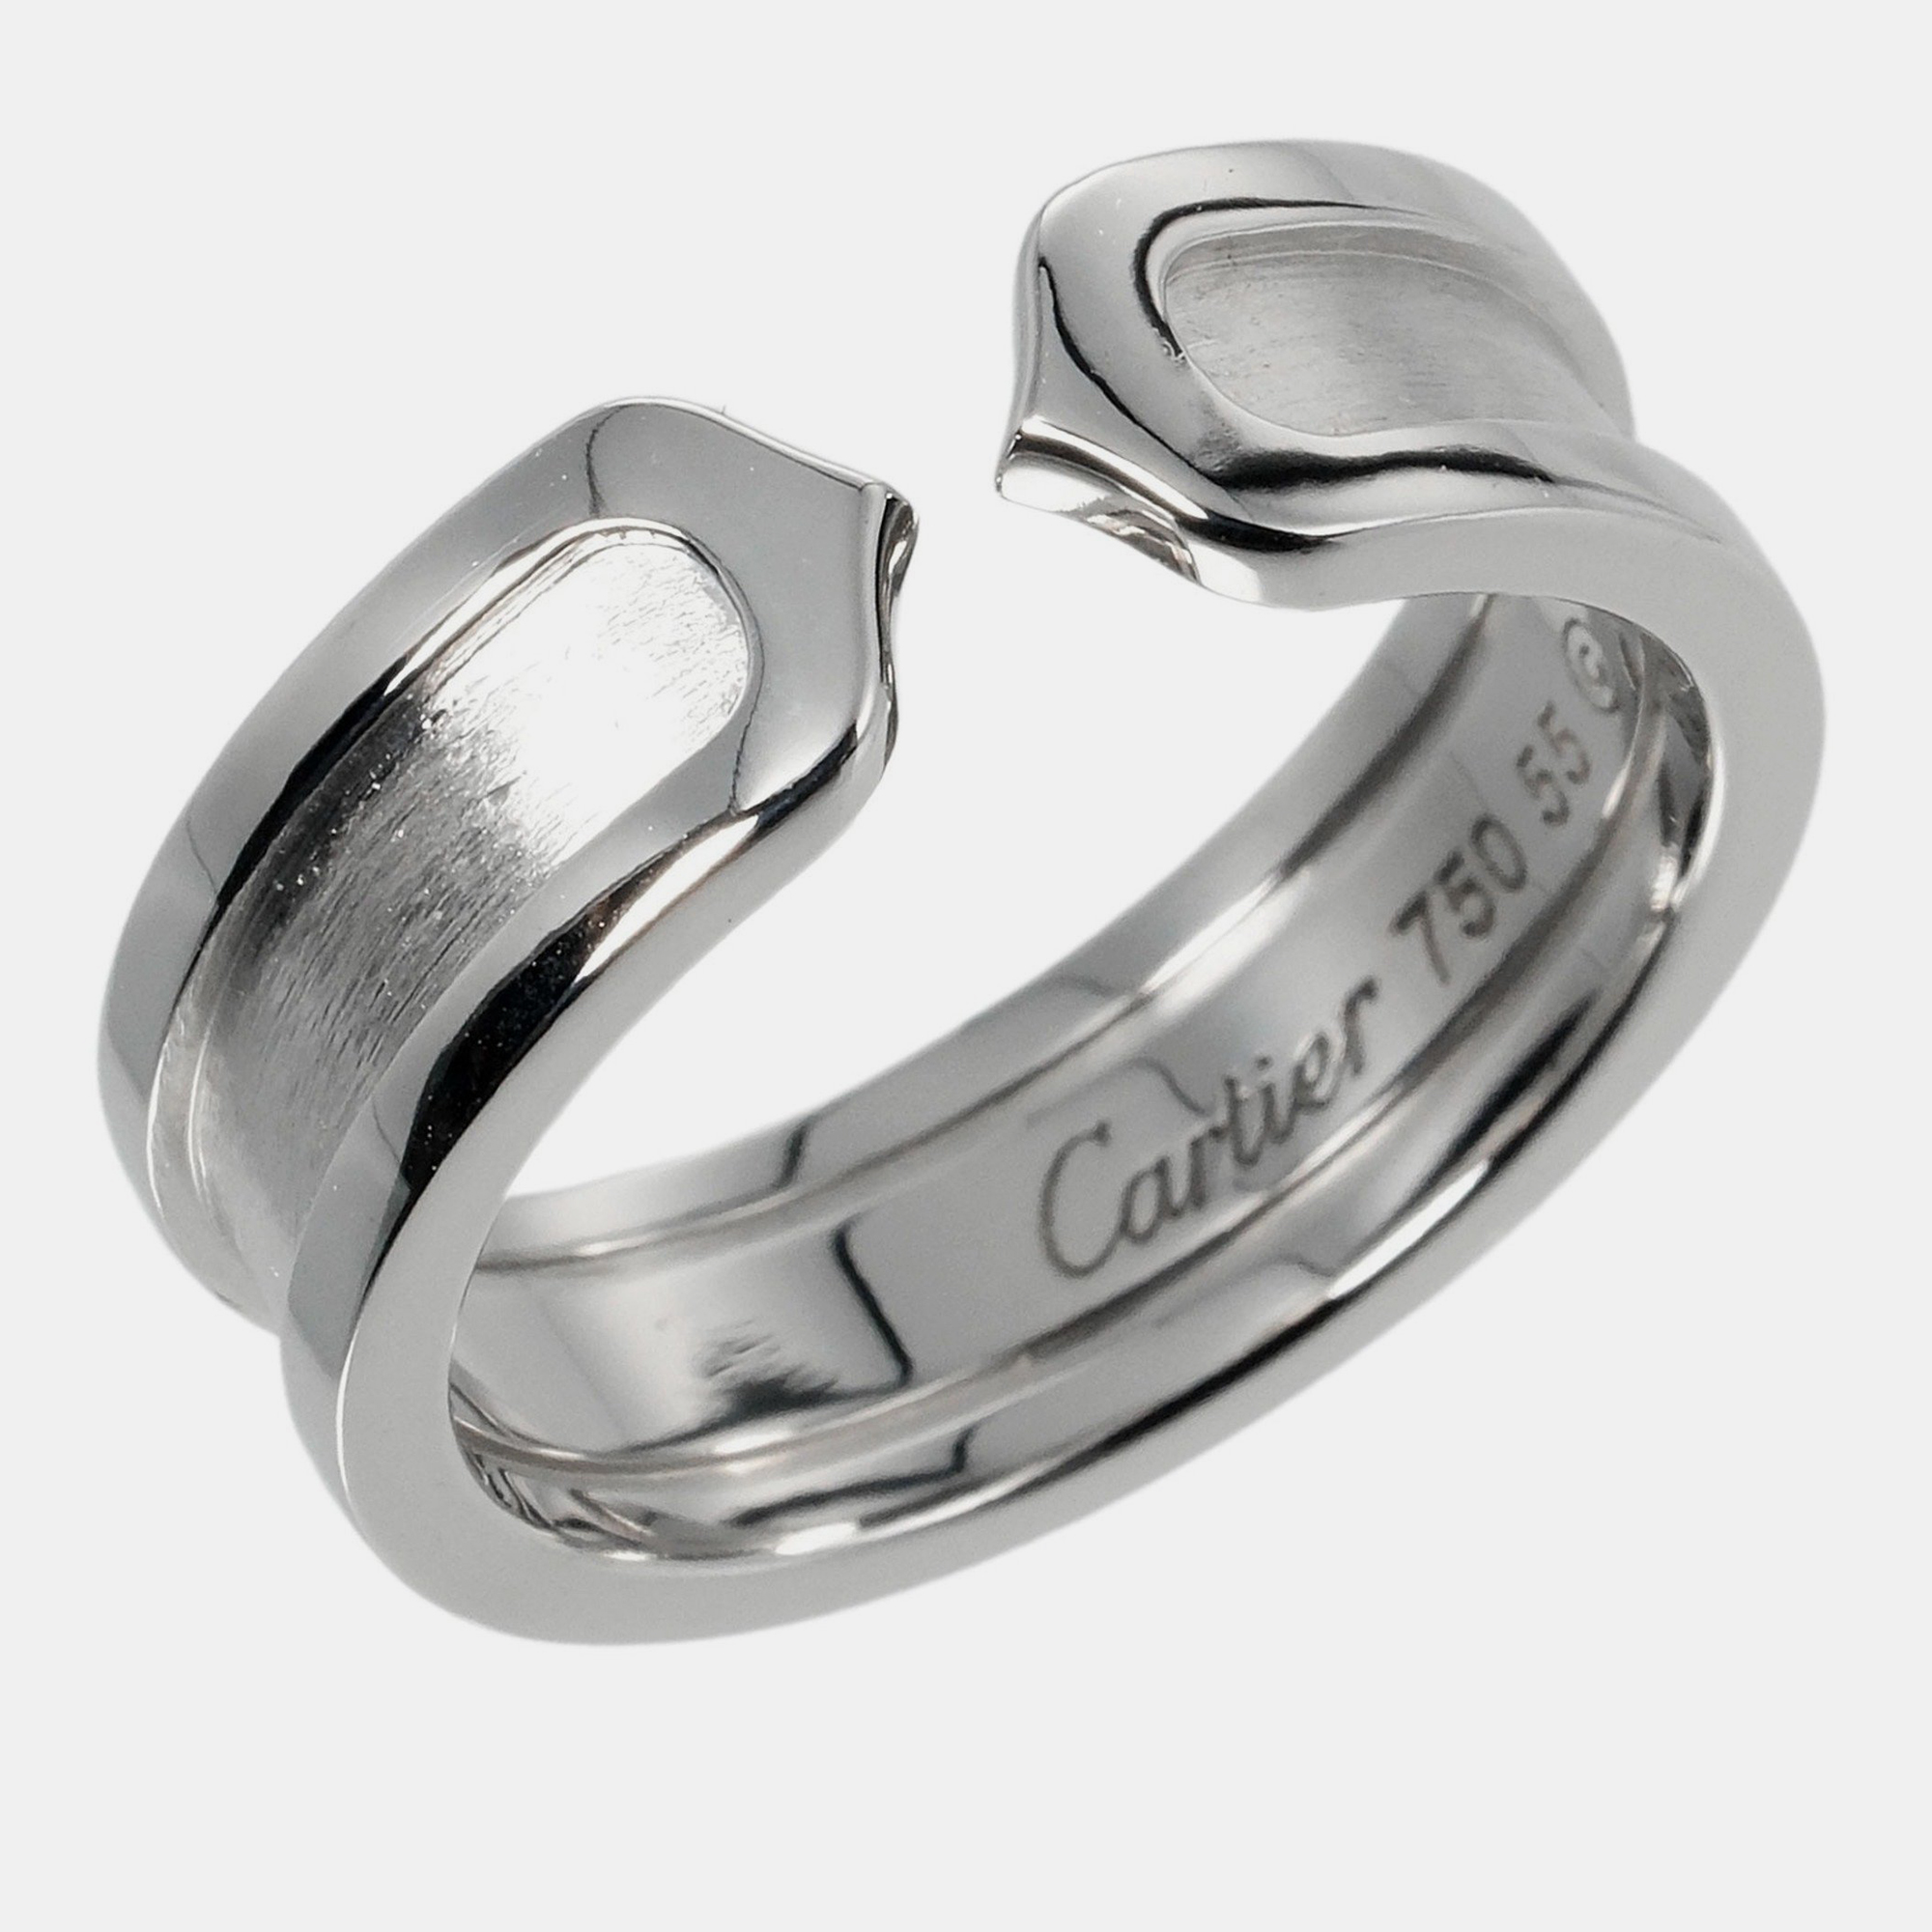 Cartier Double C 18K White Gold Ring EU 55